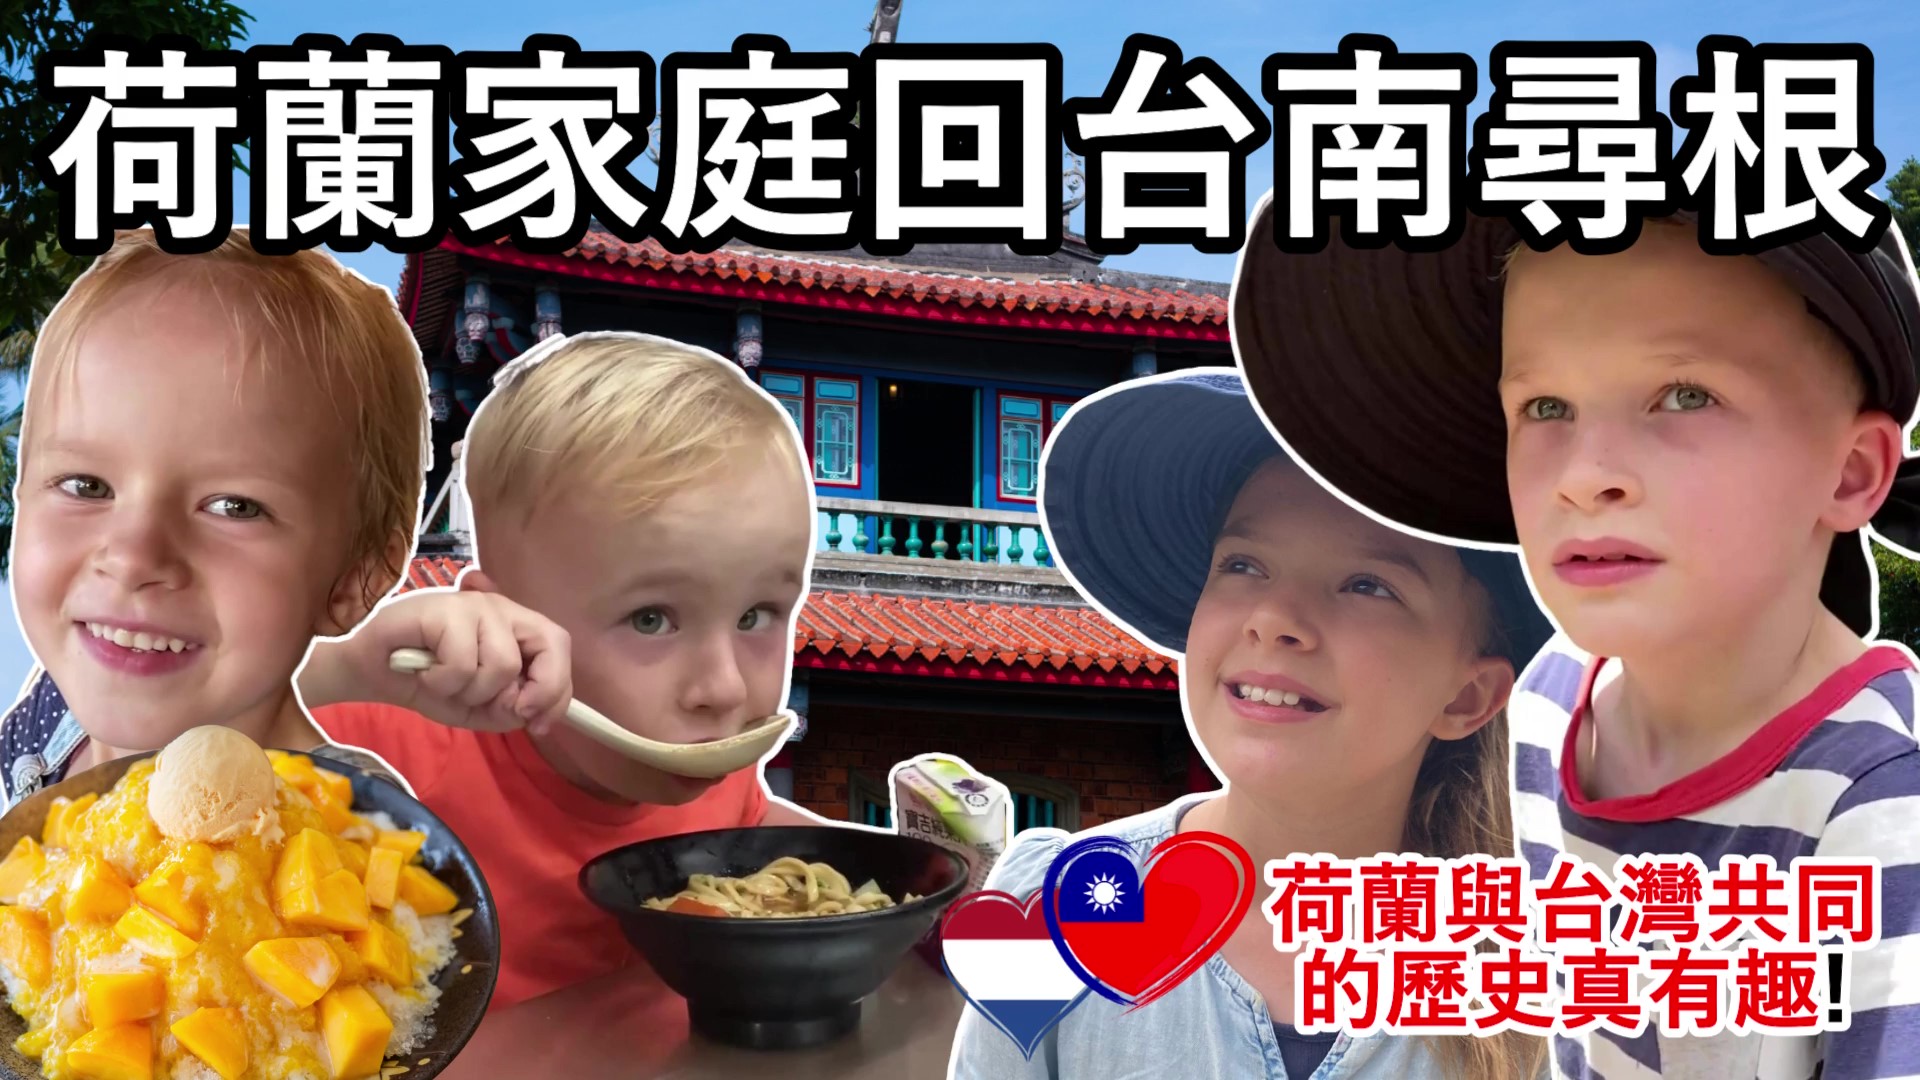 Pemerintah Kota Tainan mengundang YouTuber Willemsen dari Belanda dan keluarganya untuk berkeliling Tainan.  (Sumber foto : 荷蘭人在台灣Willemsen in Taiwan)